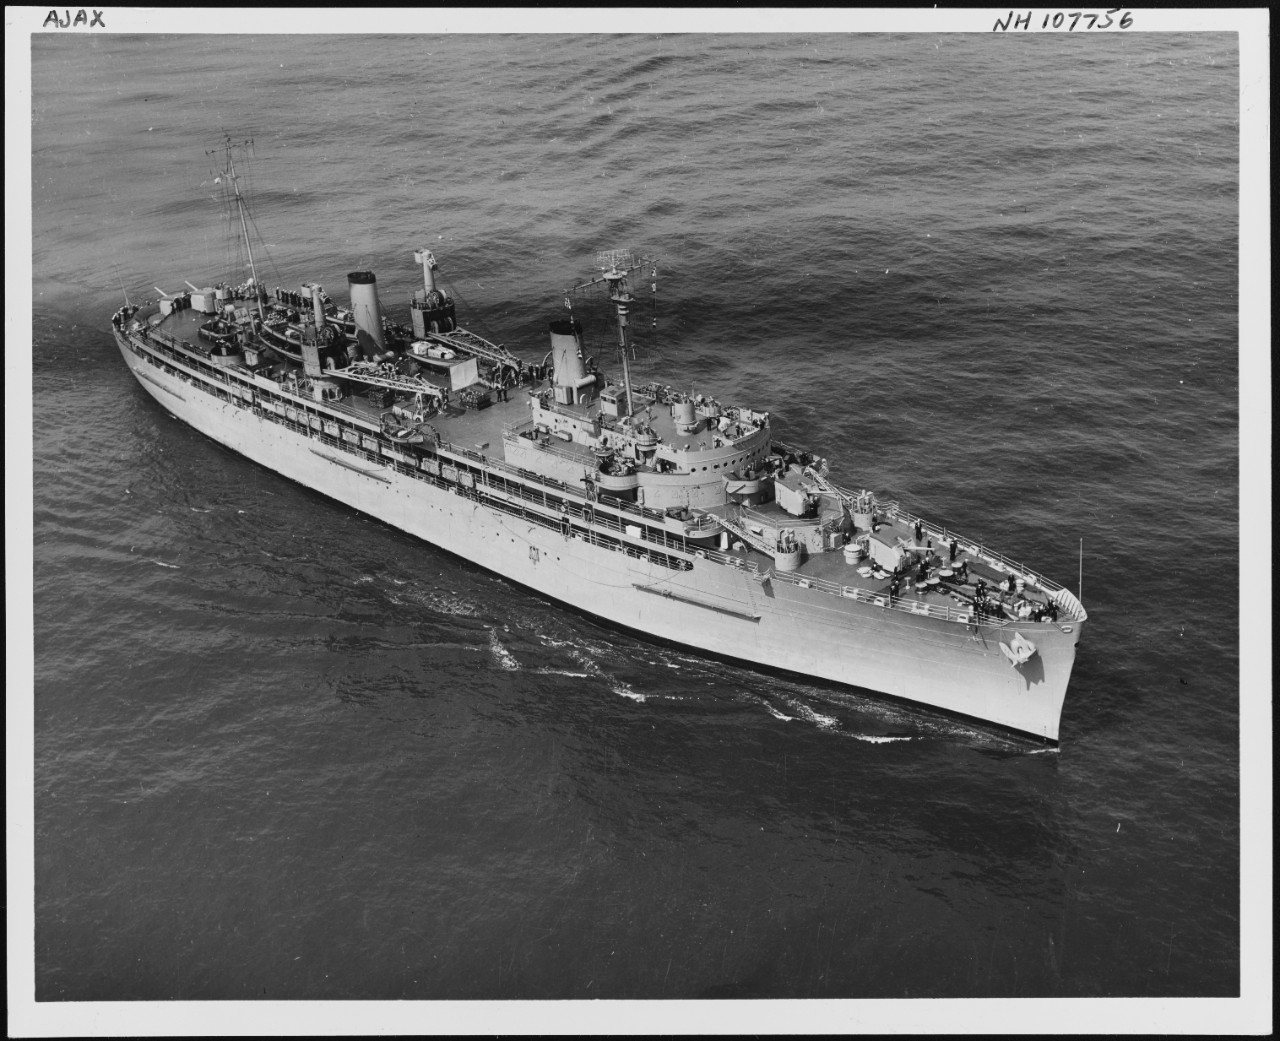 NH 107756 USS Ajax